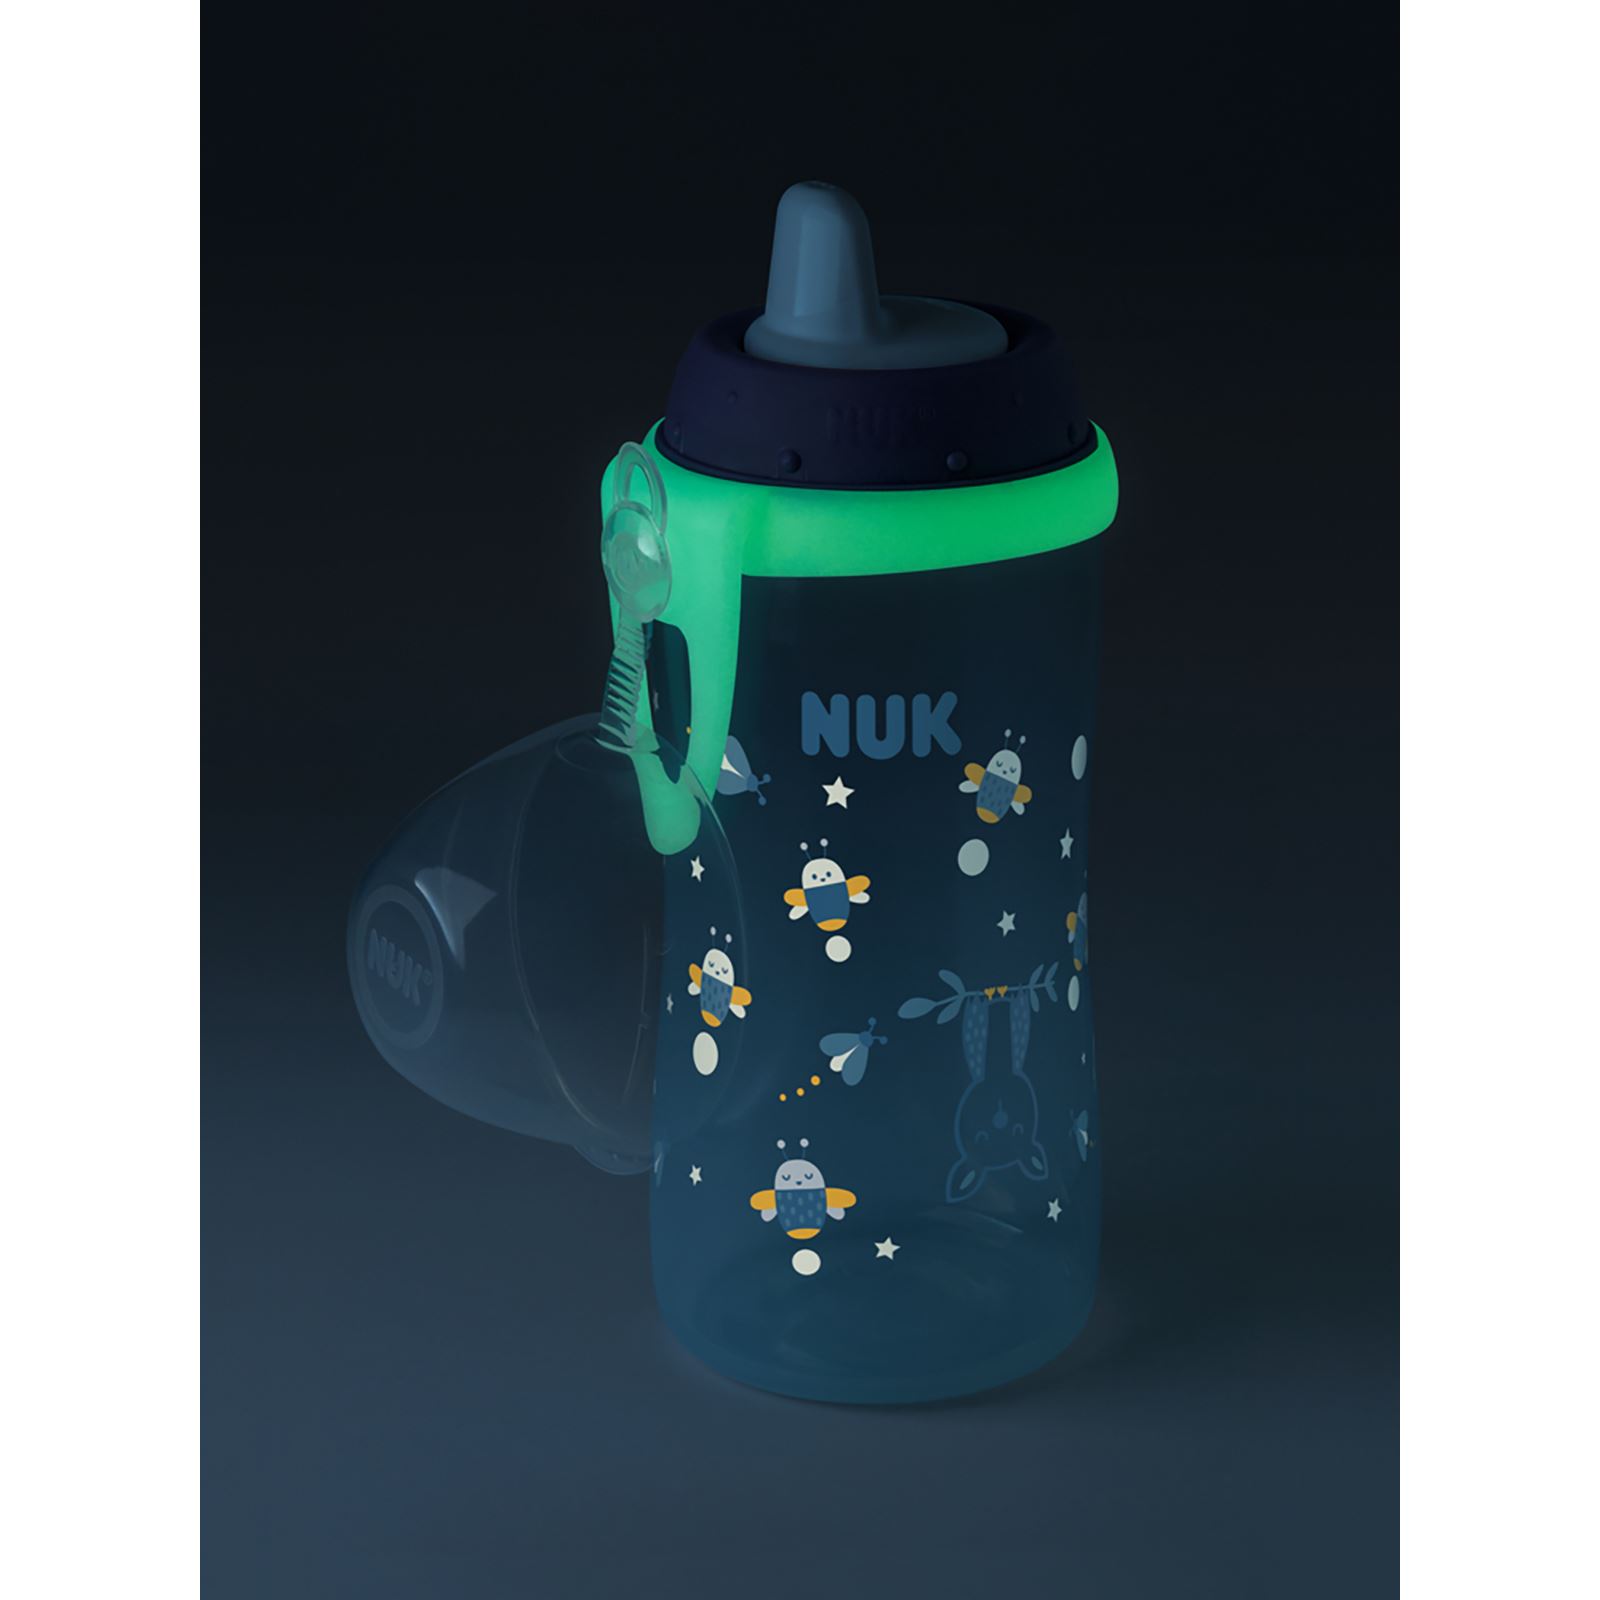 Nuk Kıddy Cup Glow Karanlıkta Parlayan Suluk 300 ml Mavi